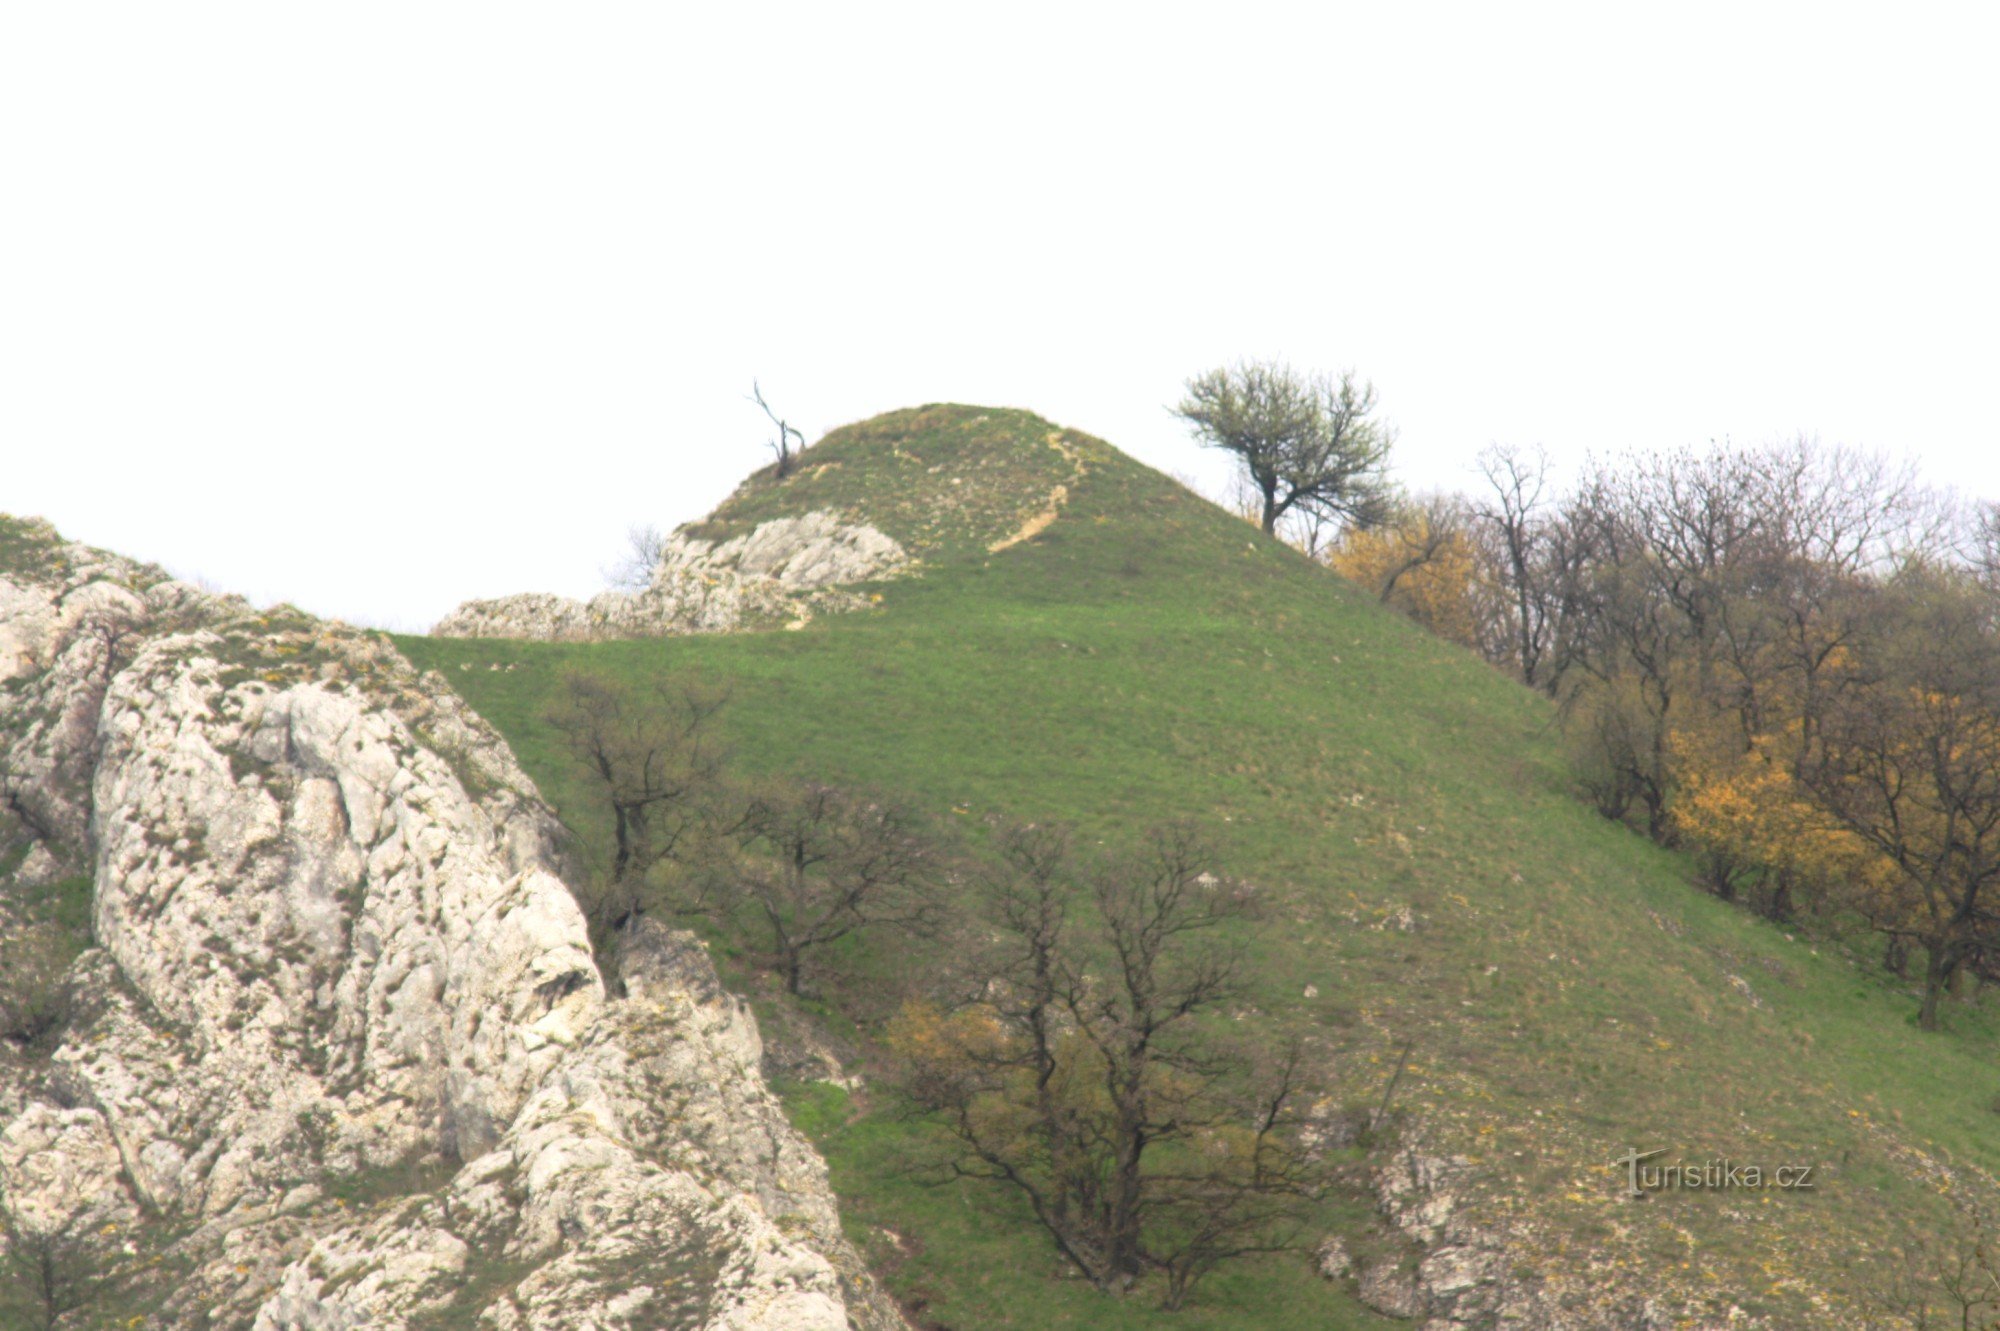 Uma colina com um antigo castelo